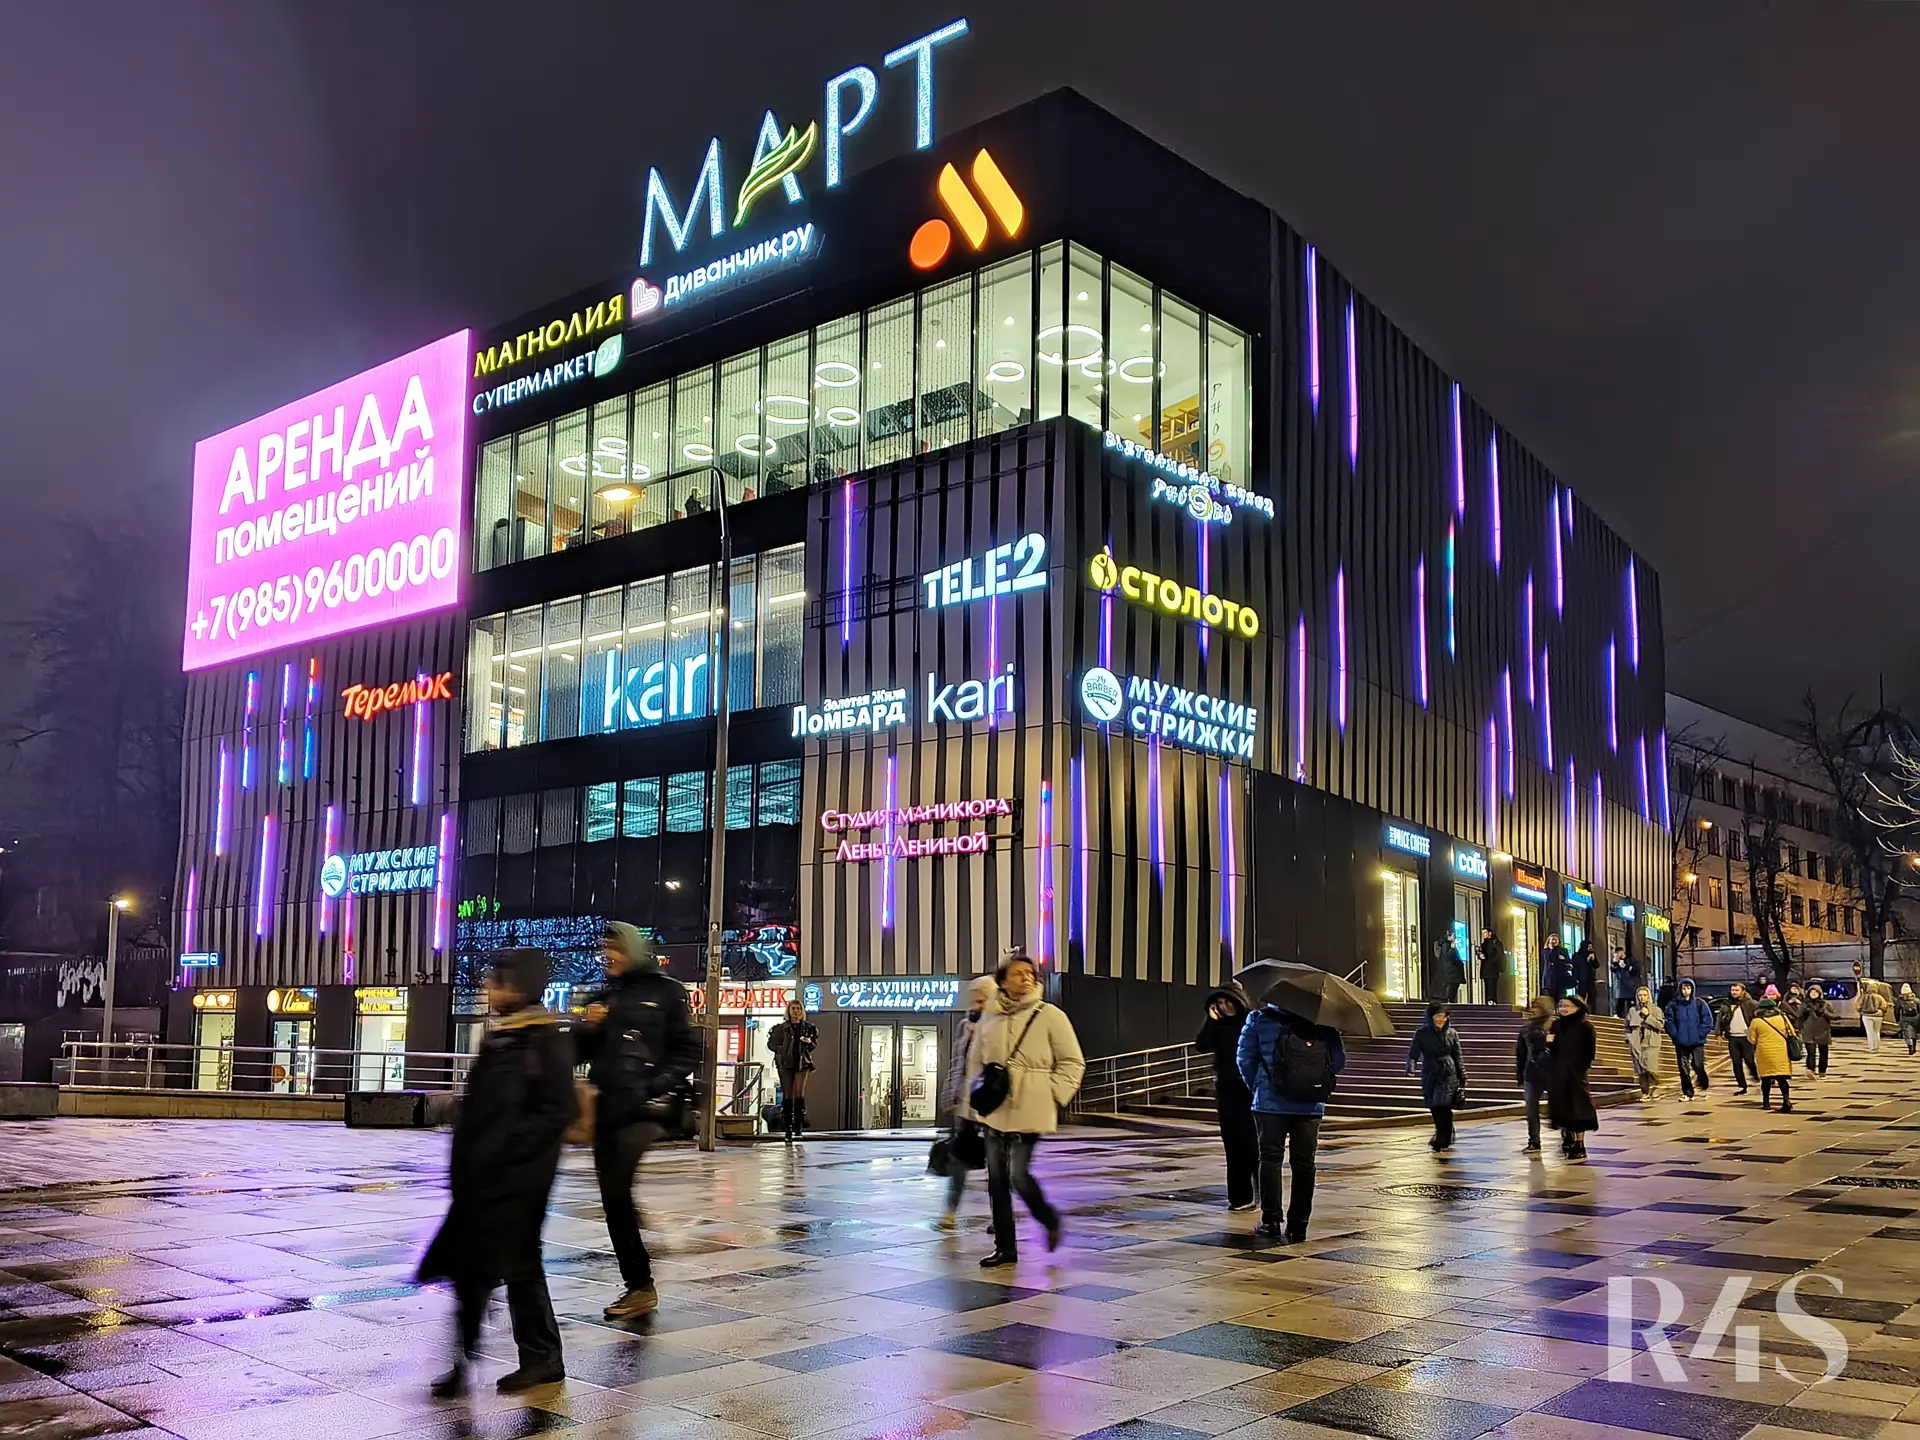 Аренда торговых помещений площадью 11.6 - 101.3 м2 в Москве:  Большая Семеновская, 17А ТЦ«МАРТ» R4S | Realty4Sale